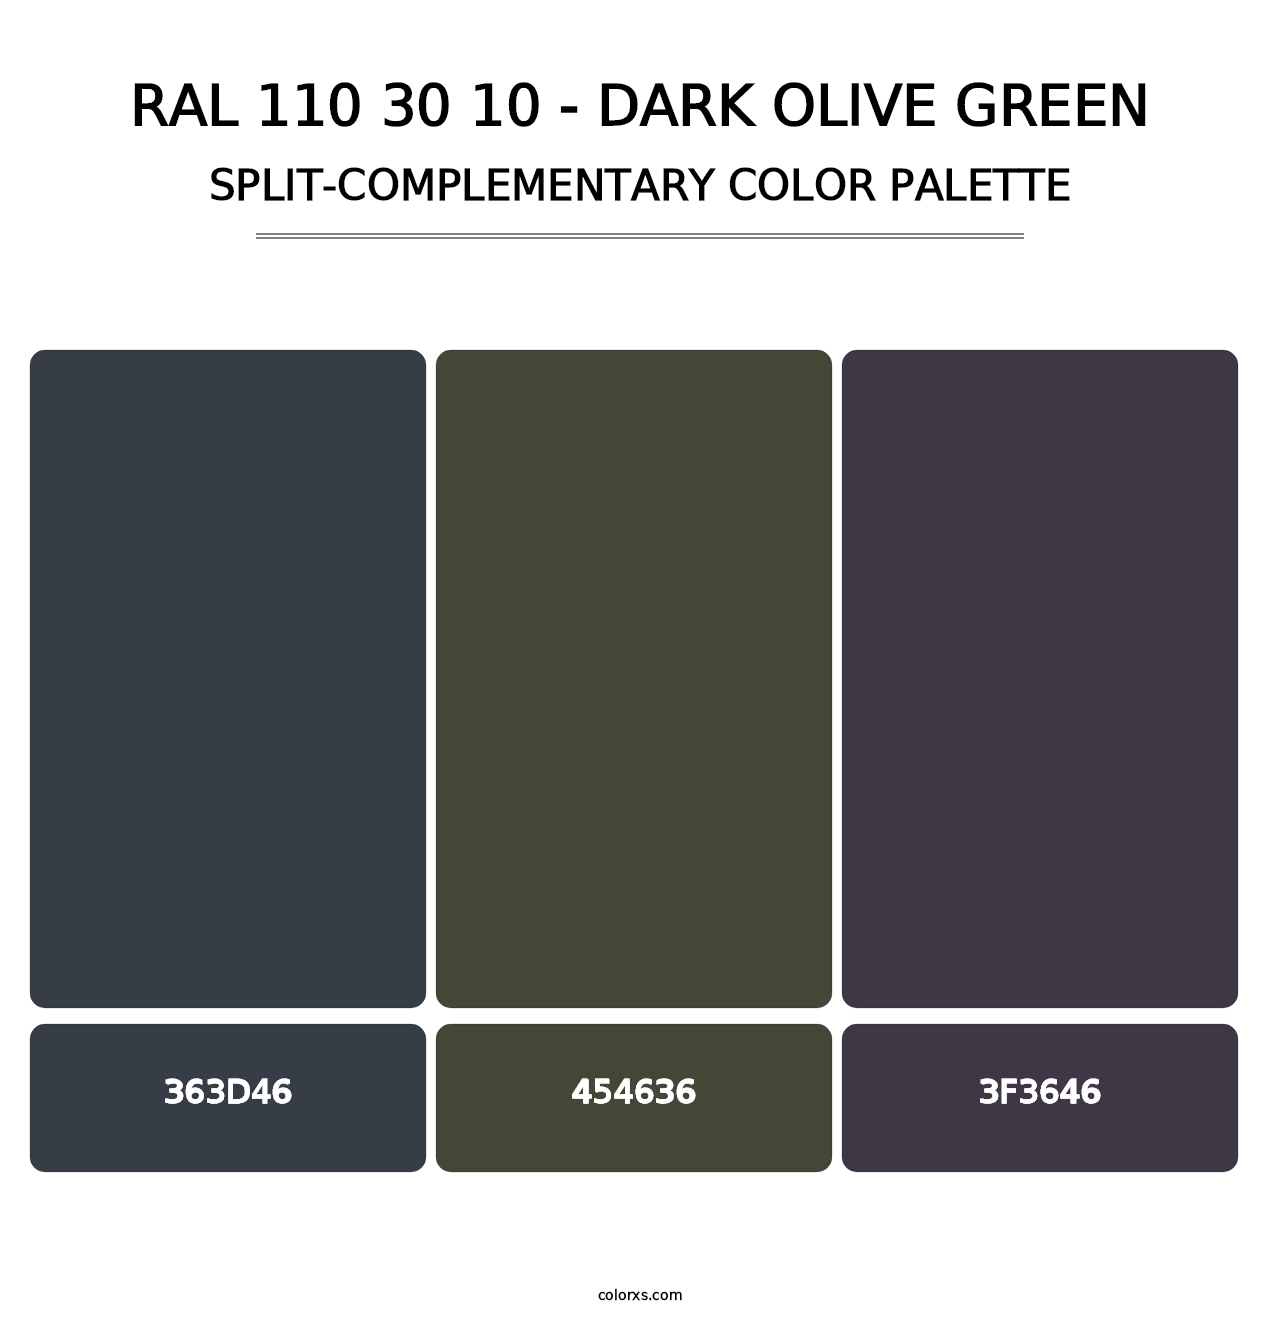 RAL 110 30 10 - Dark Olive Green - Split-Complementary Color Palette